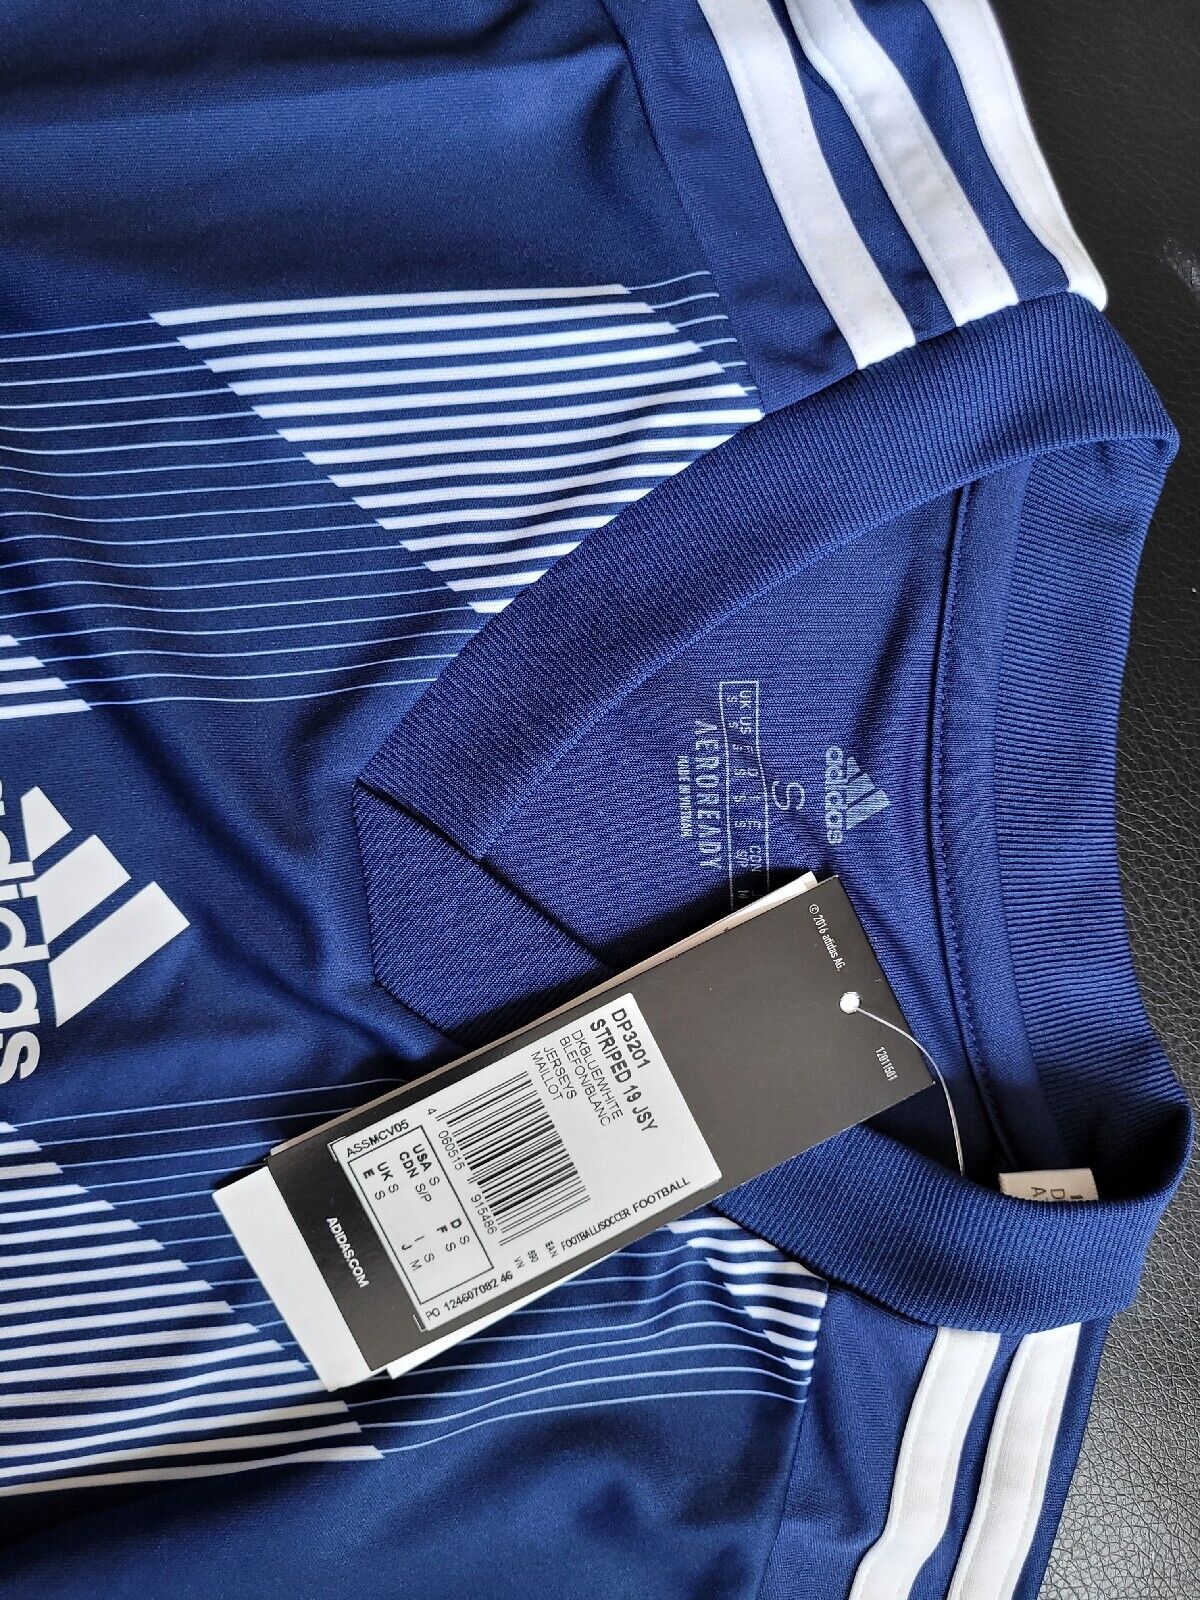 Adidas Men's Football T-shirt Striped 19 Jersey